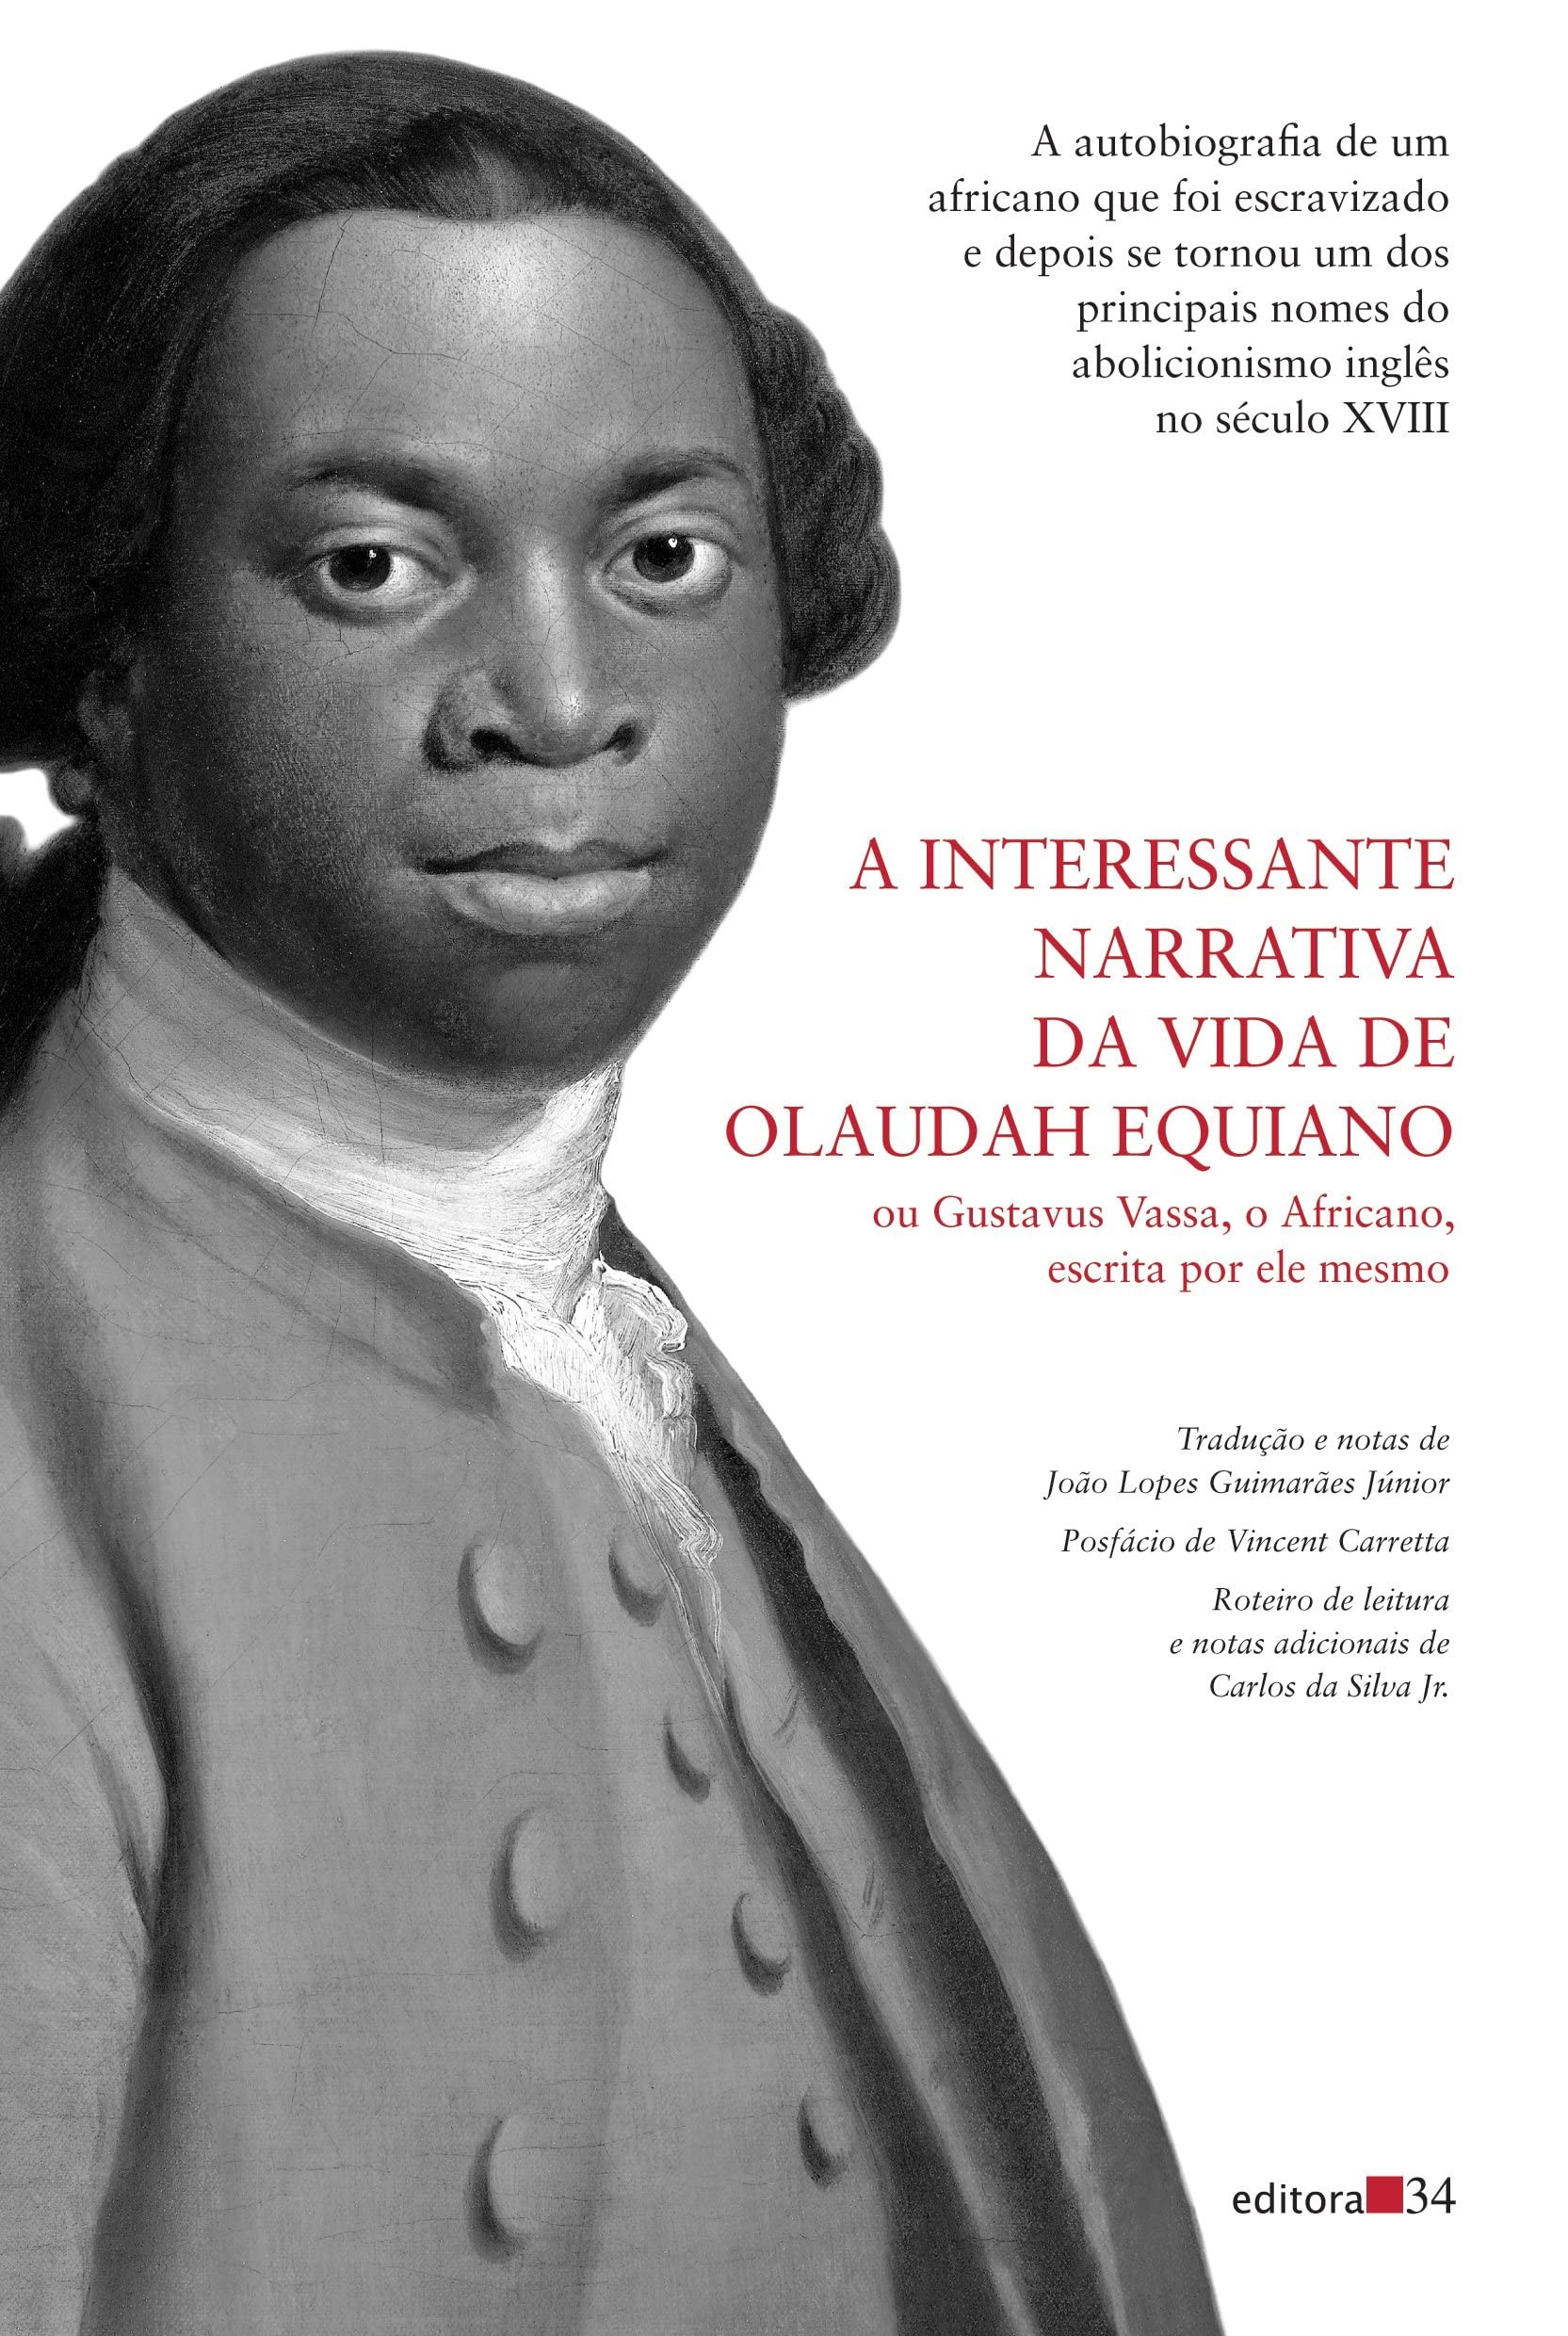 A interessante narrativa da vida de Olaudah Equiano, por Olaudah Equiano (Editora 34, 352 páginas, R$ 78,00) (Foto: Divulgação)